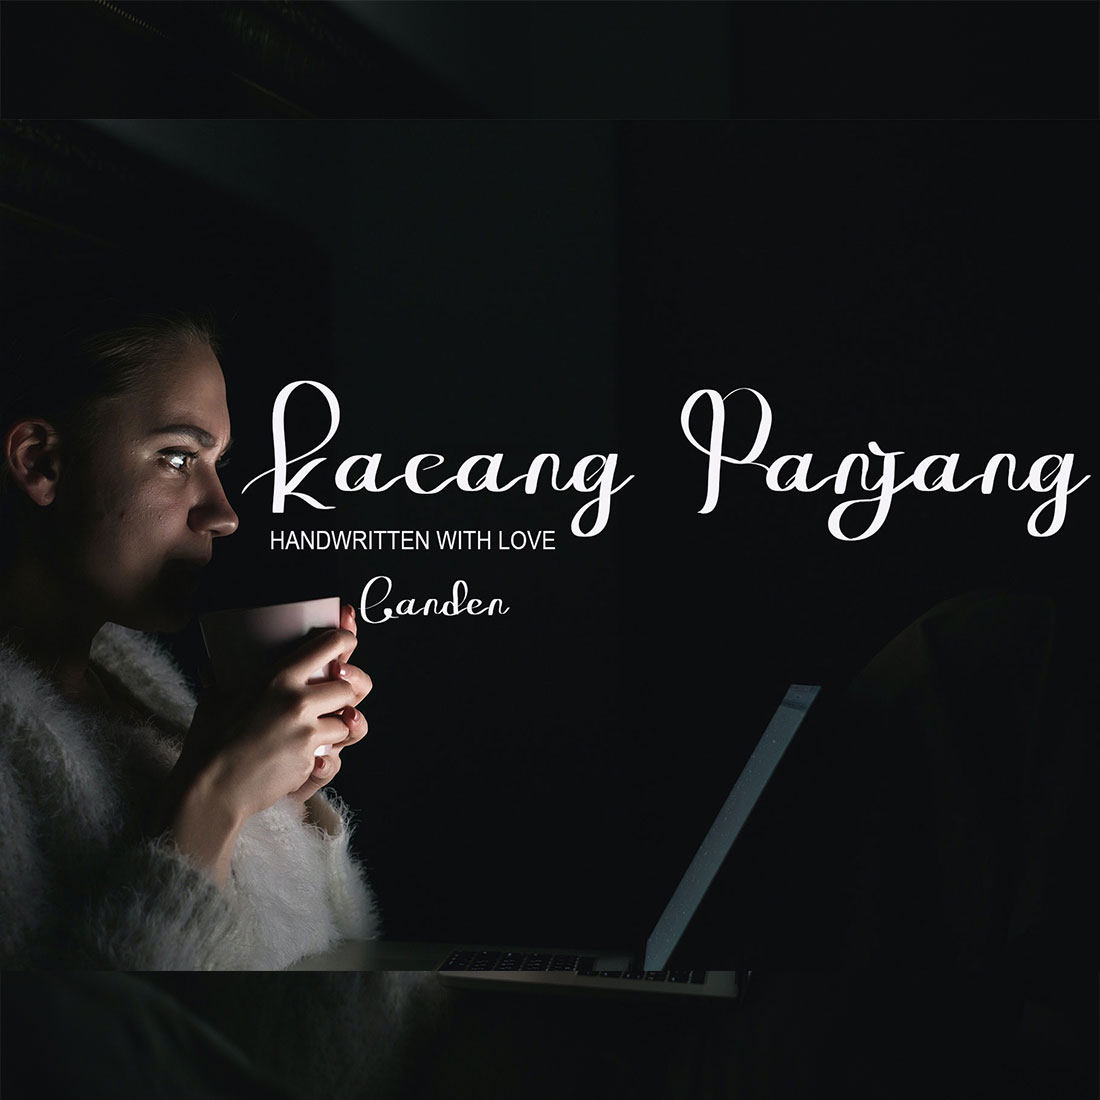 Script Font Kacang Panjang Design cover image.